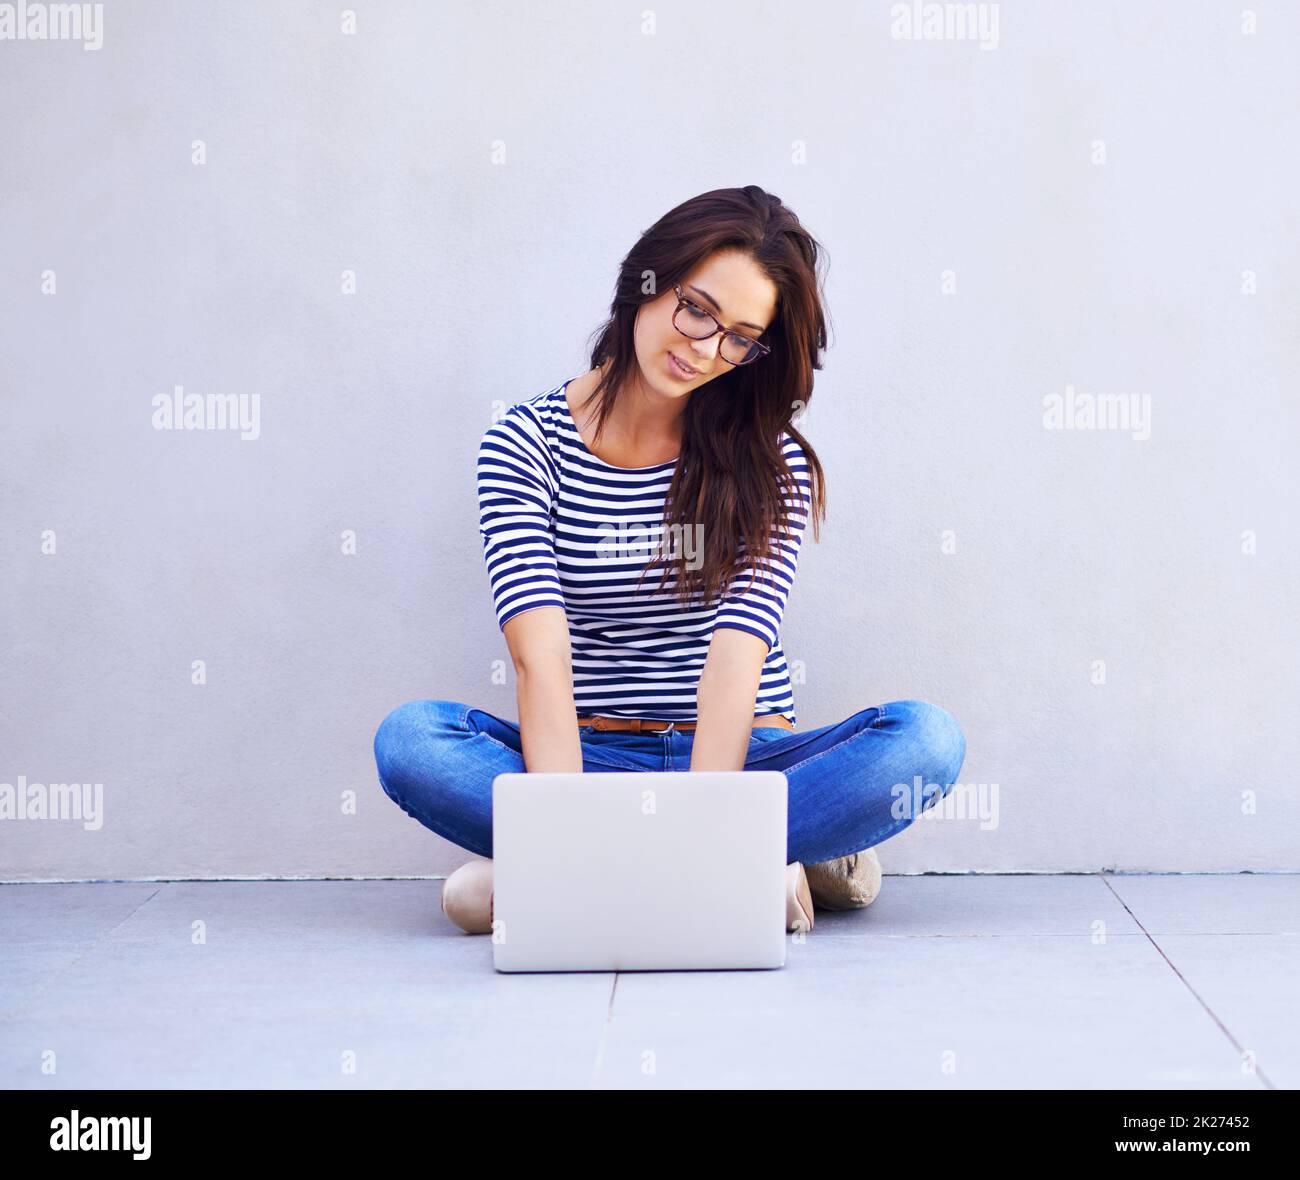 Einfach in der Blog-o-sphere surfen. Ganzkörperaufnahme einer attraktiven jungen Frau, die mit einem Laptop auf gekreuzten Beinen sitzt. Stockfoto